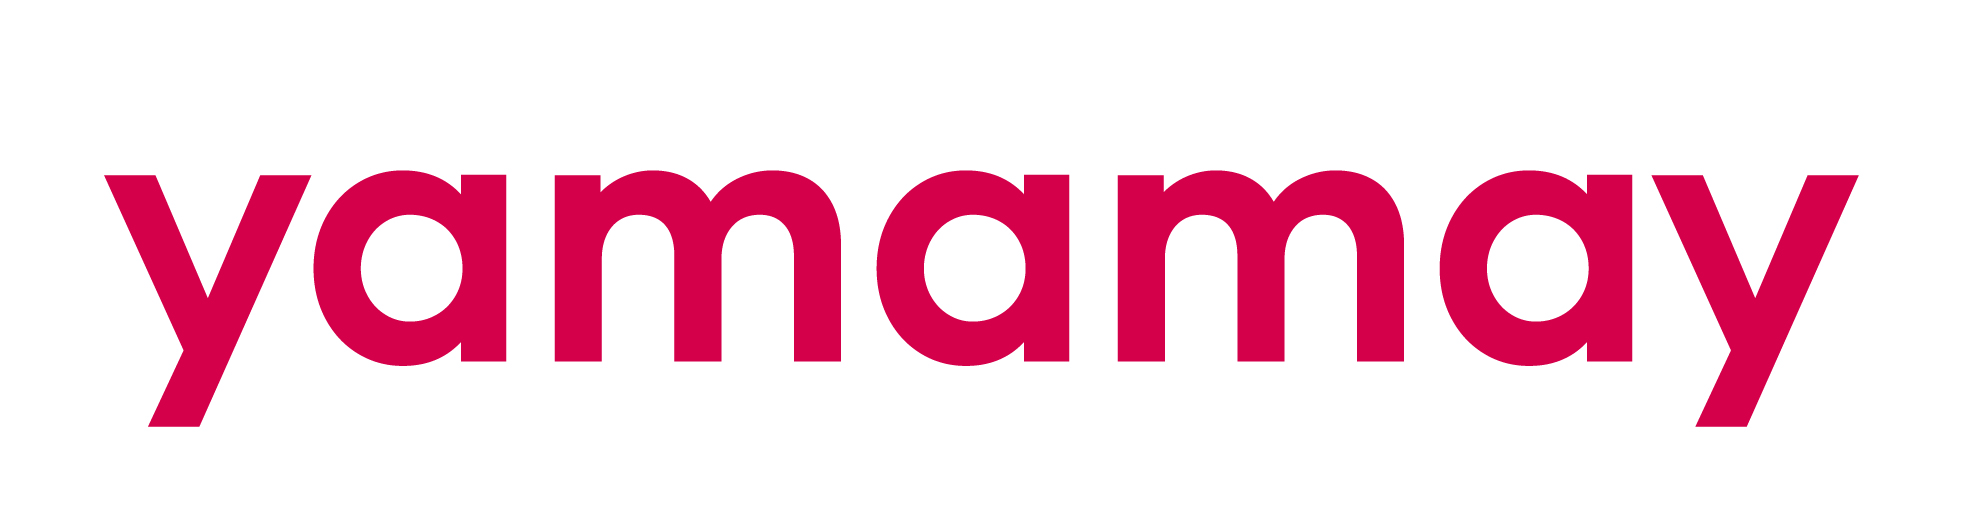 yamamay nuovo logo